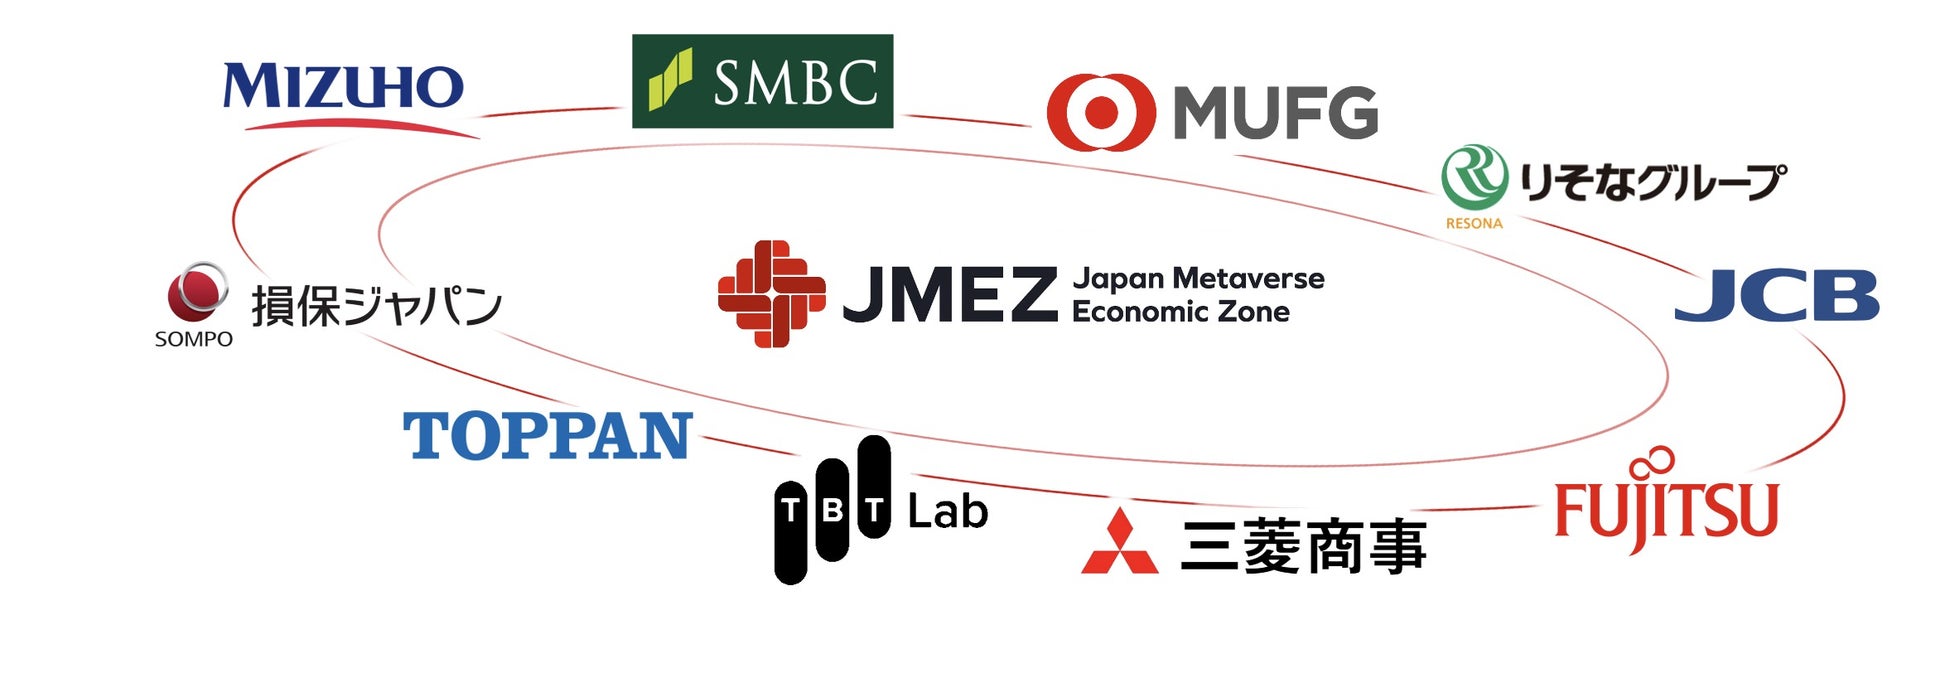 デジタルツイン社会を目指してメタバースの産業利用を開始 「ジャパン・メタバース経済圏」創出に向けた基本合意書の締結について